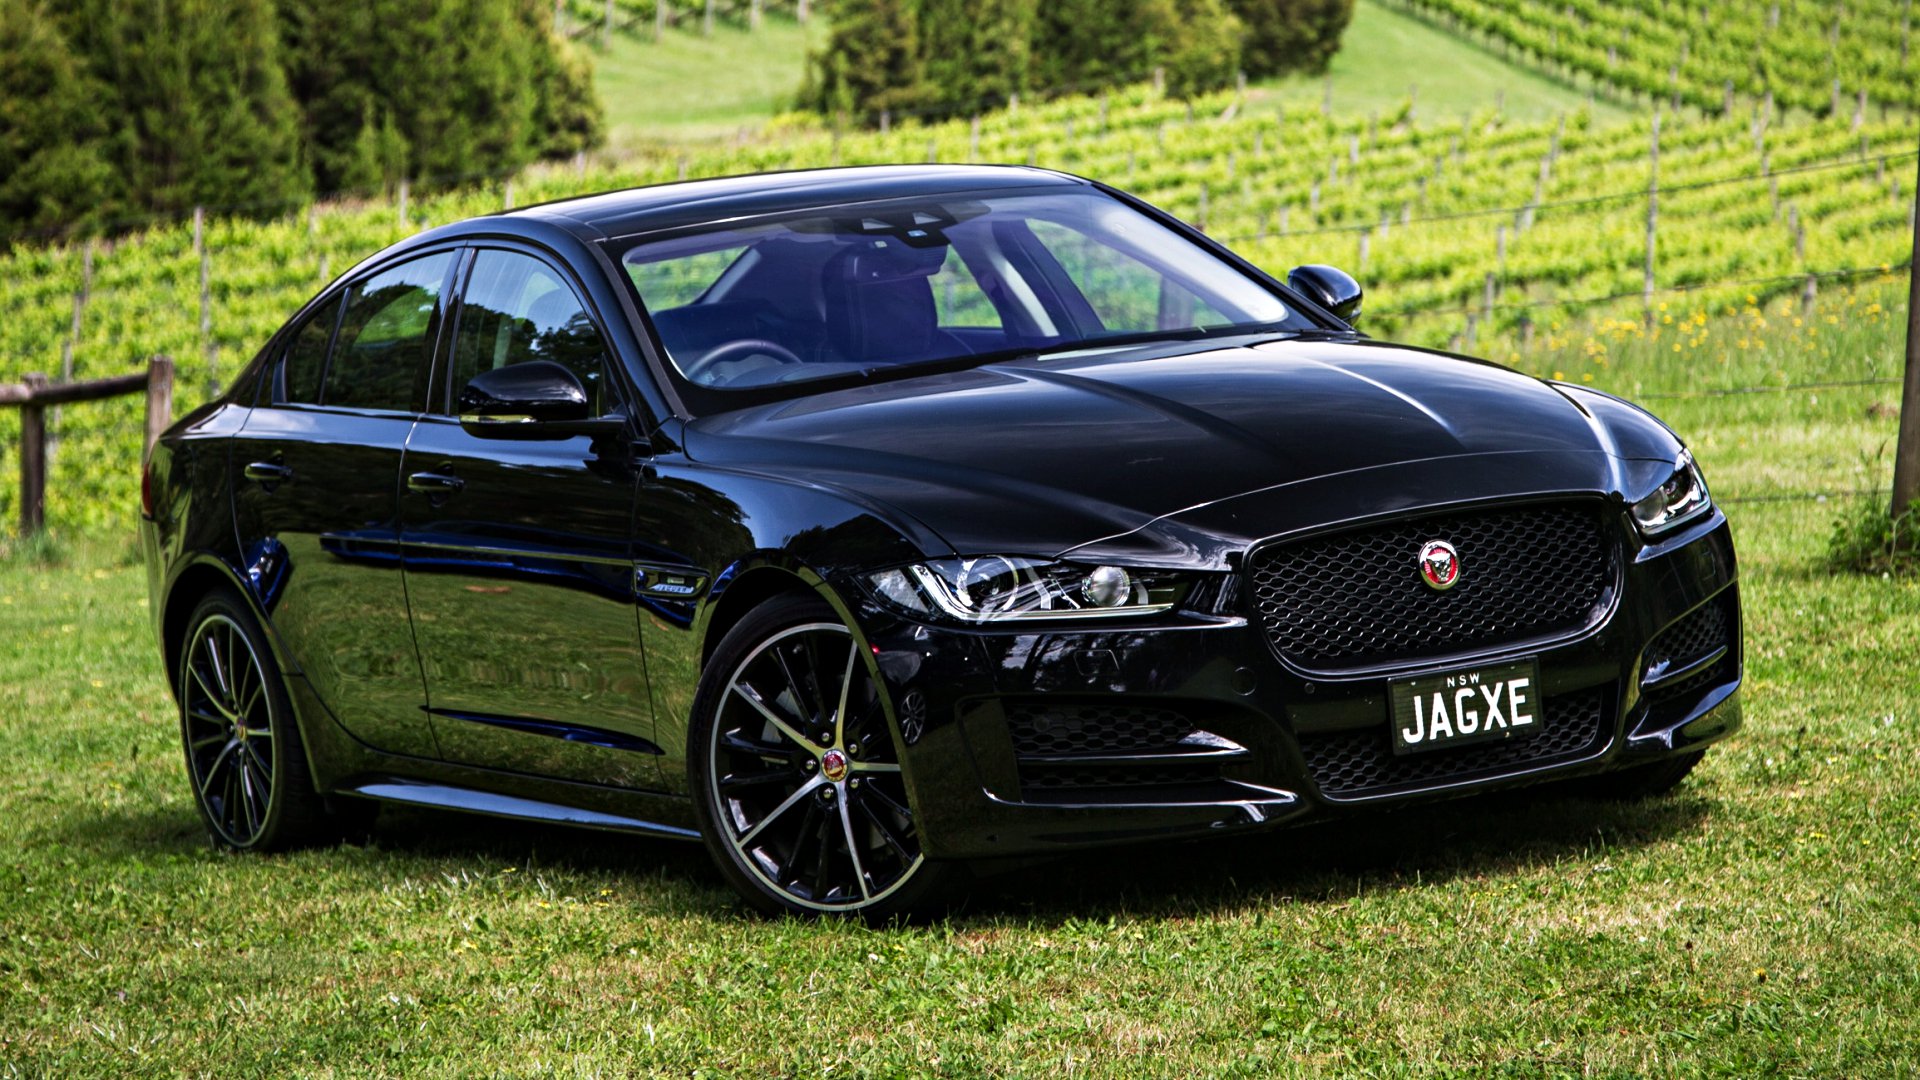 News - Jaguar XE Set To Receive 48V Mild-Hybrid With ’19 Facelift